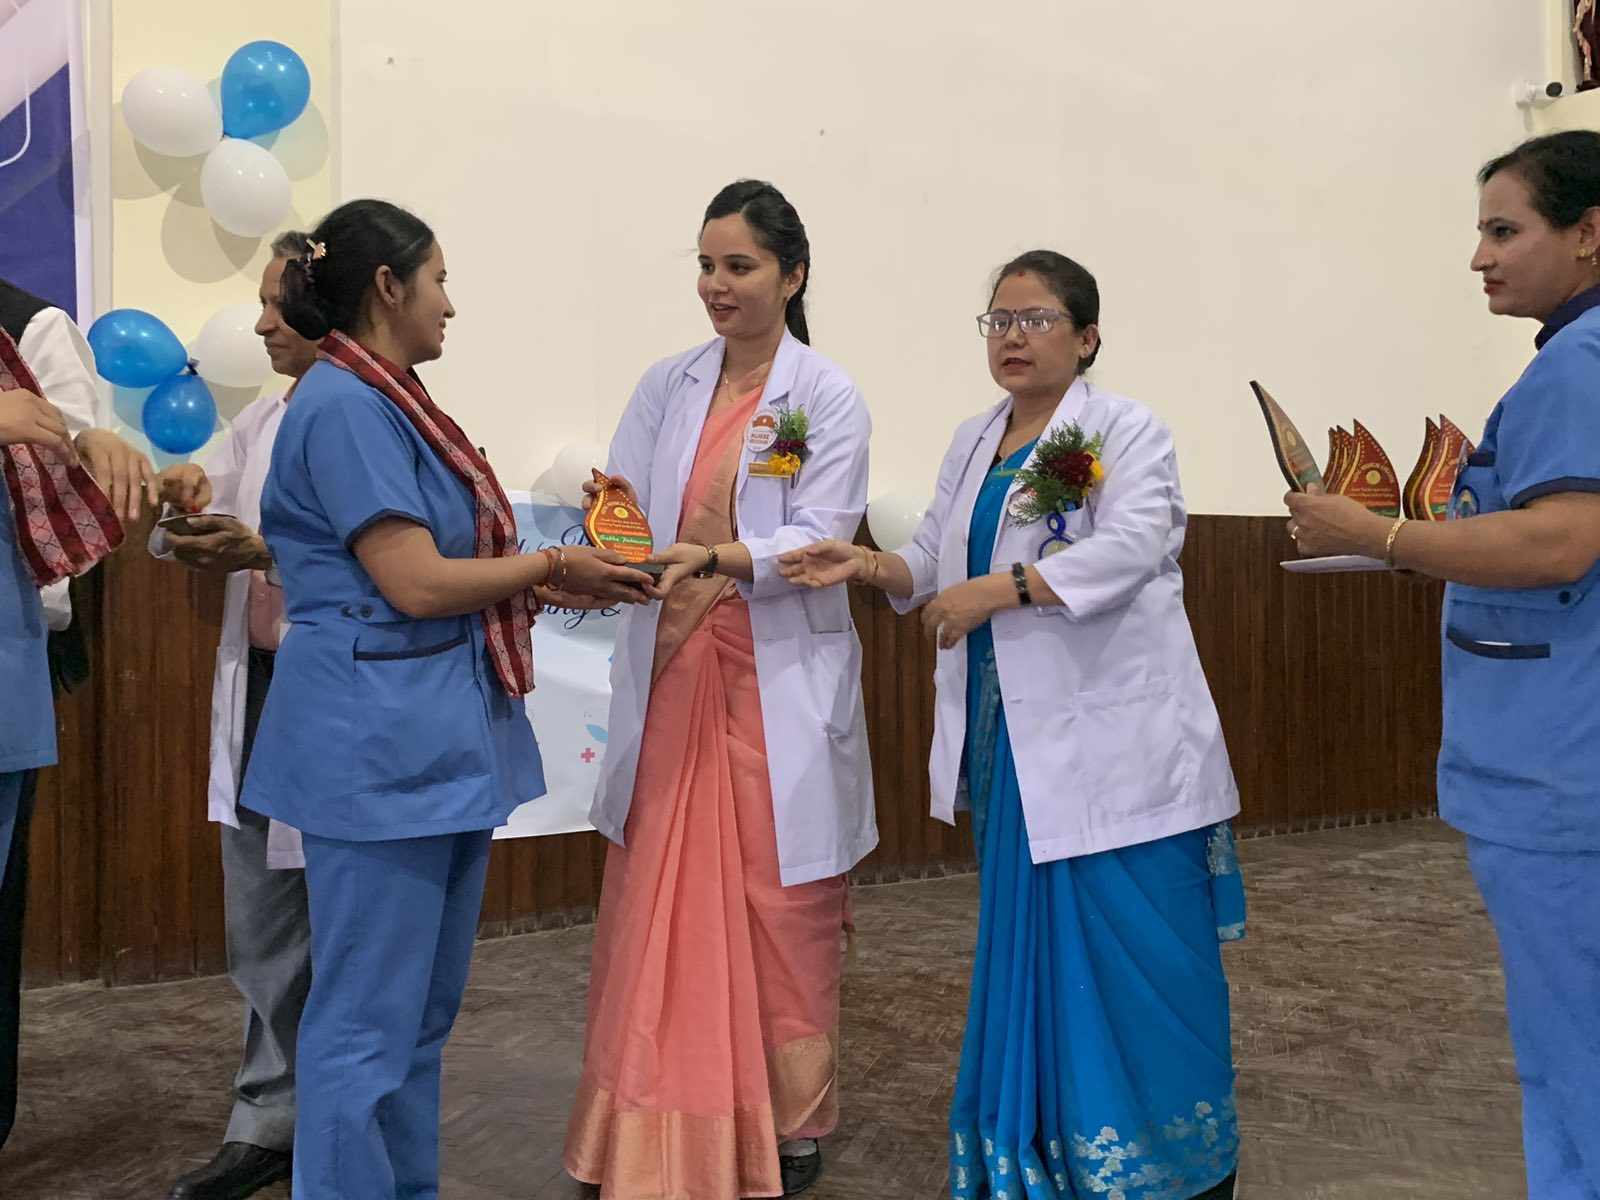 नर्सिङ दिवसको अवसरमा नेपाल मेडिकल कलेजले नर्सहरुलाई सम्मान